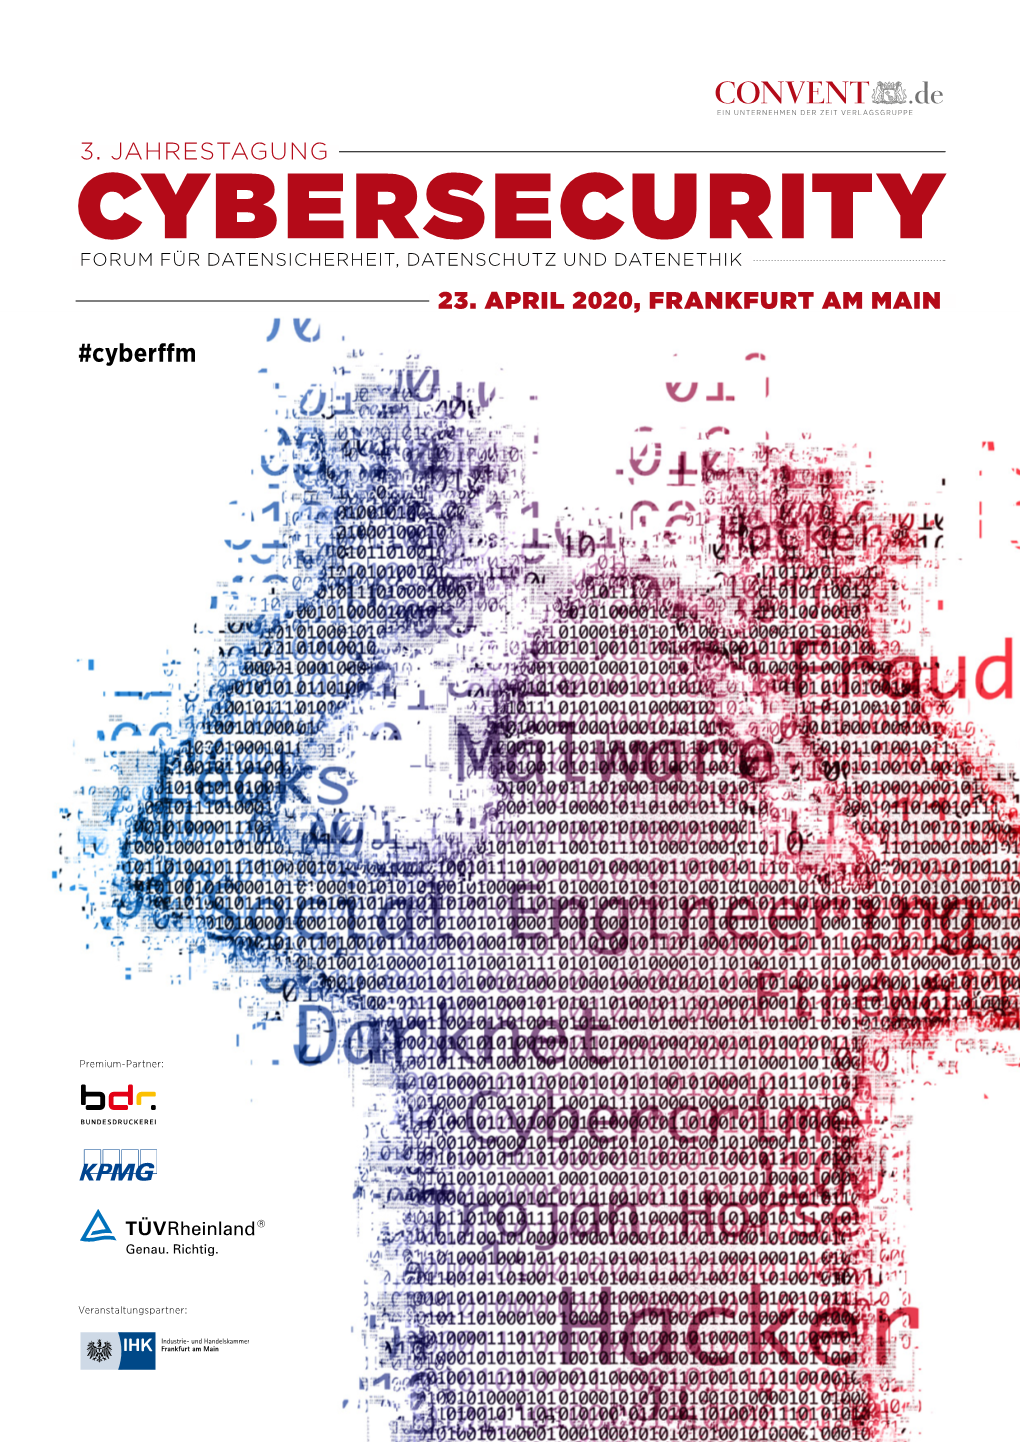 Cybersecurity Forum Für Datensicherheit, Datenschutz Und Datenethik 23